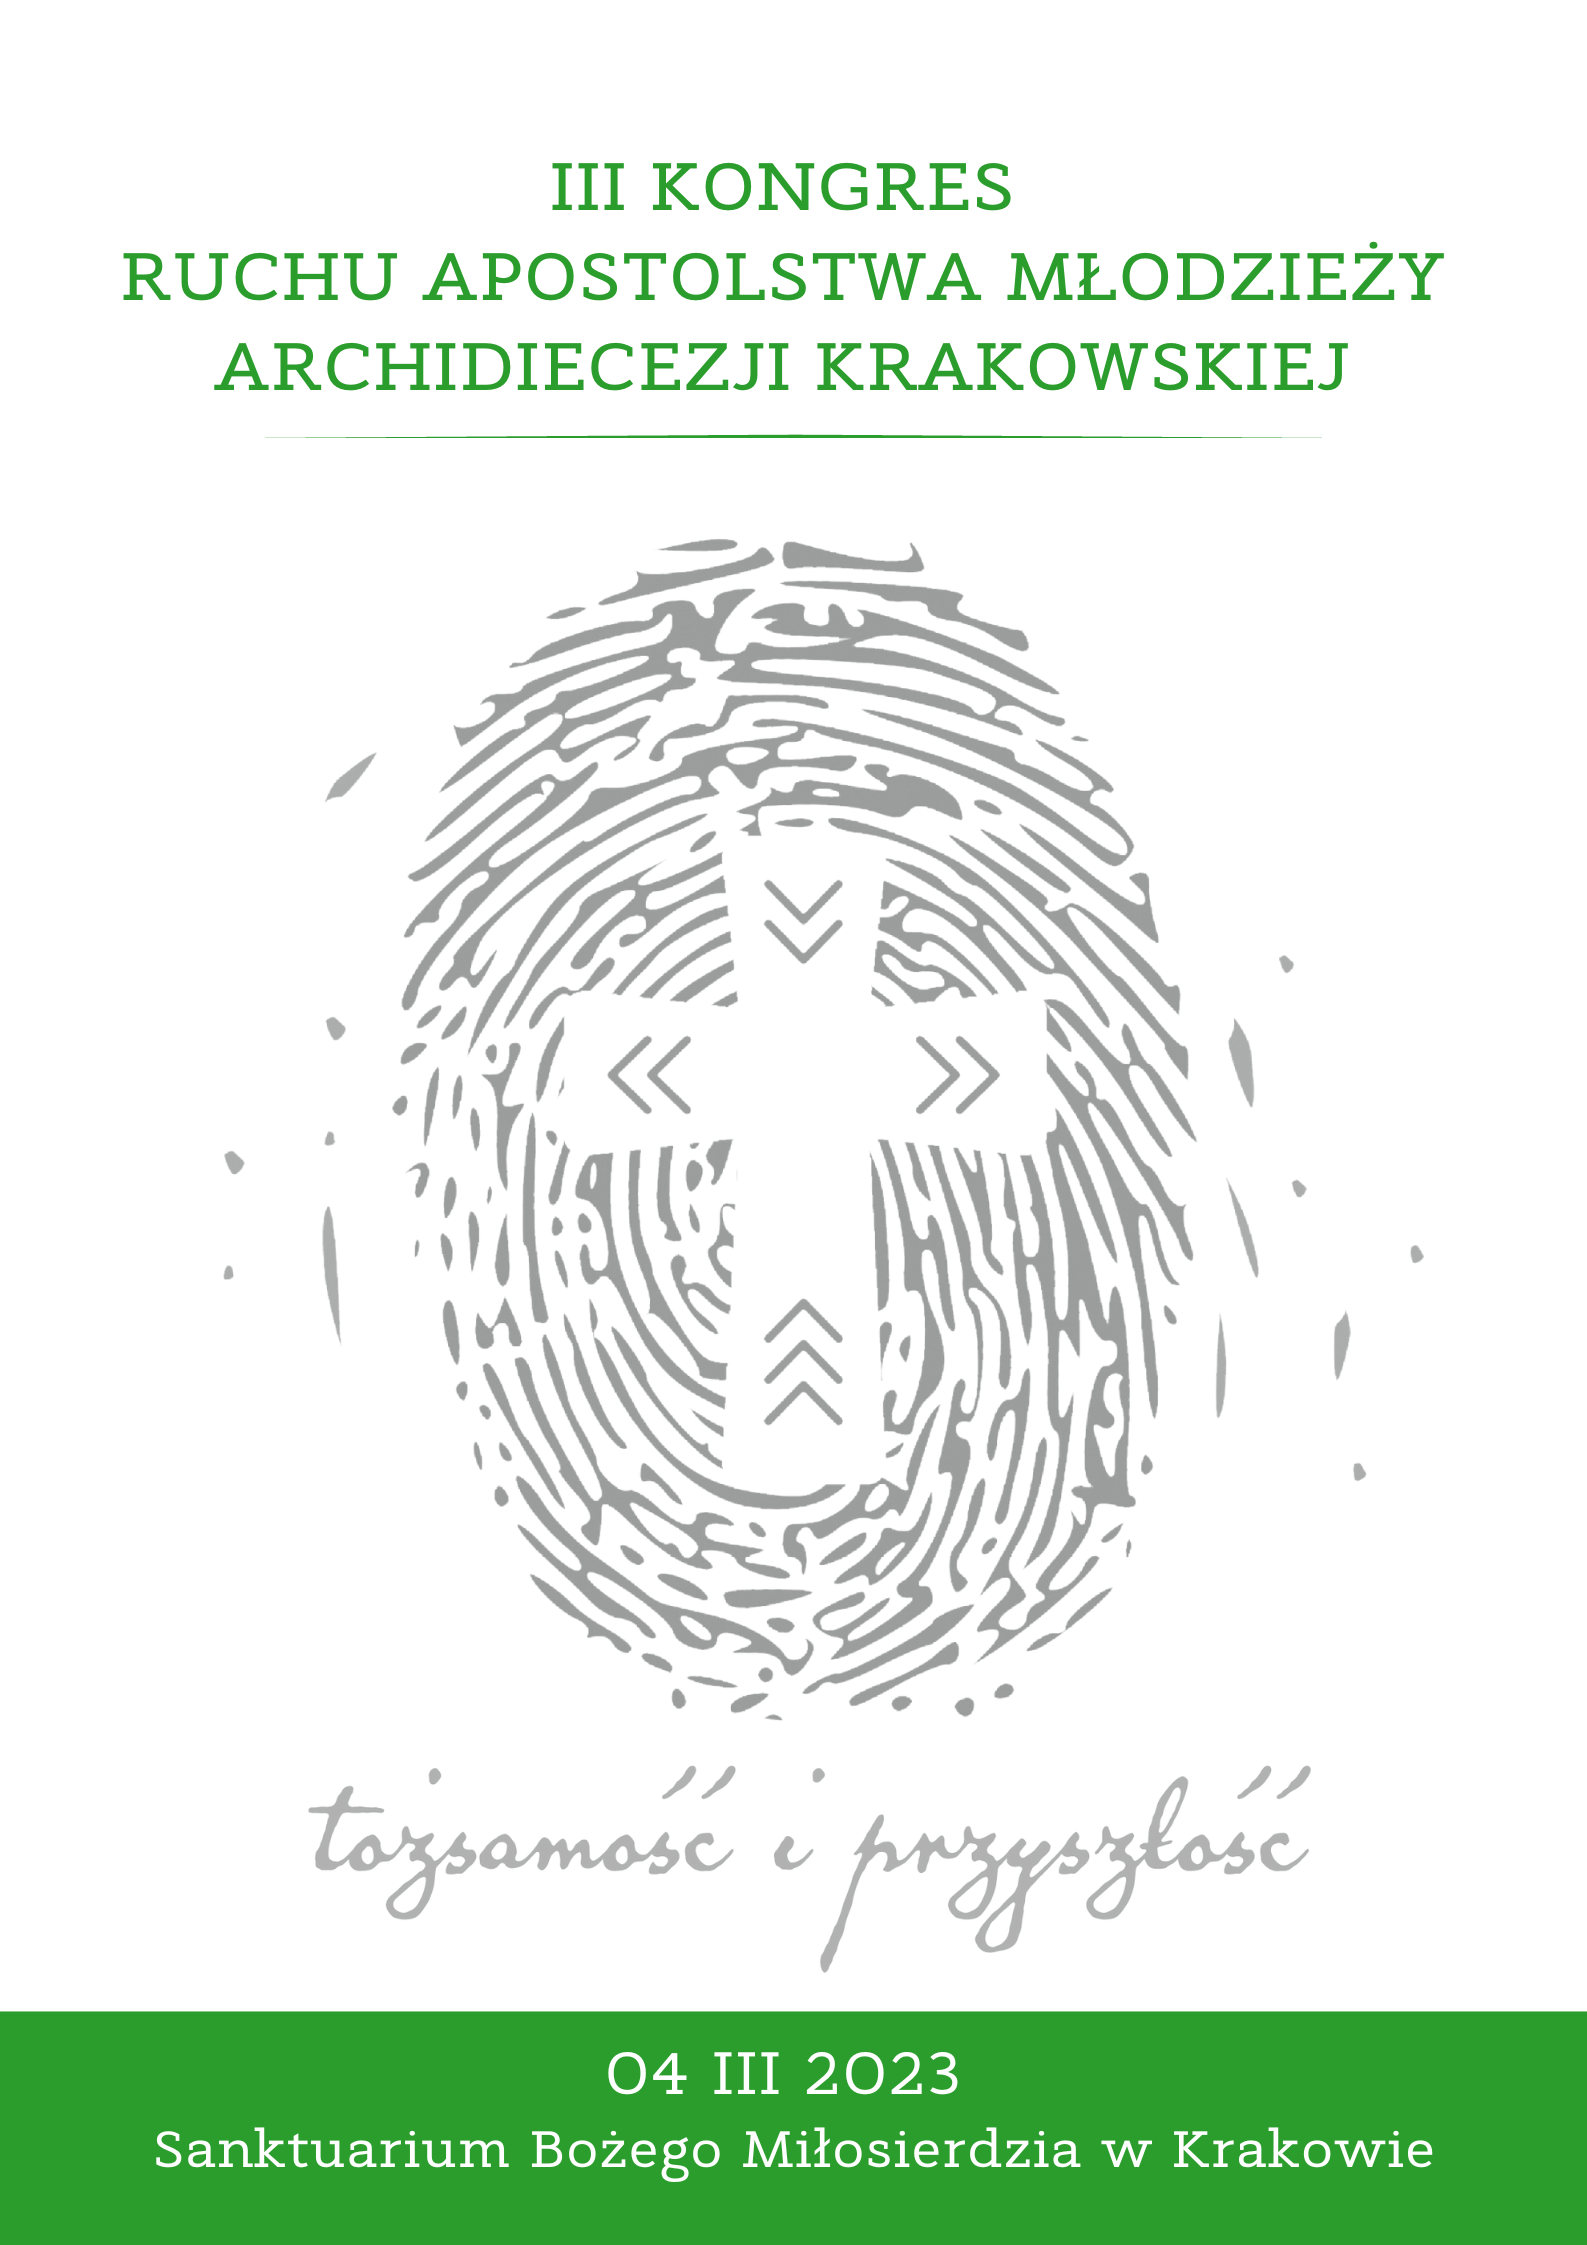 III Kongres RAM Archidiecezji Krakowskiej “Tożsamość i Przyszłość”